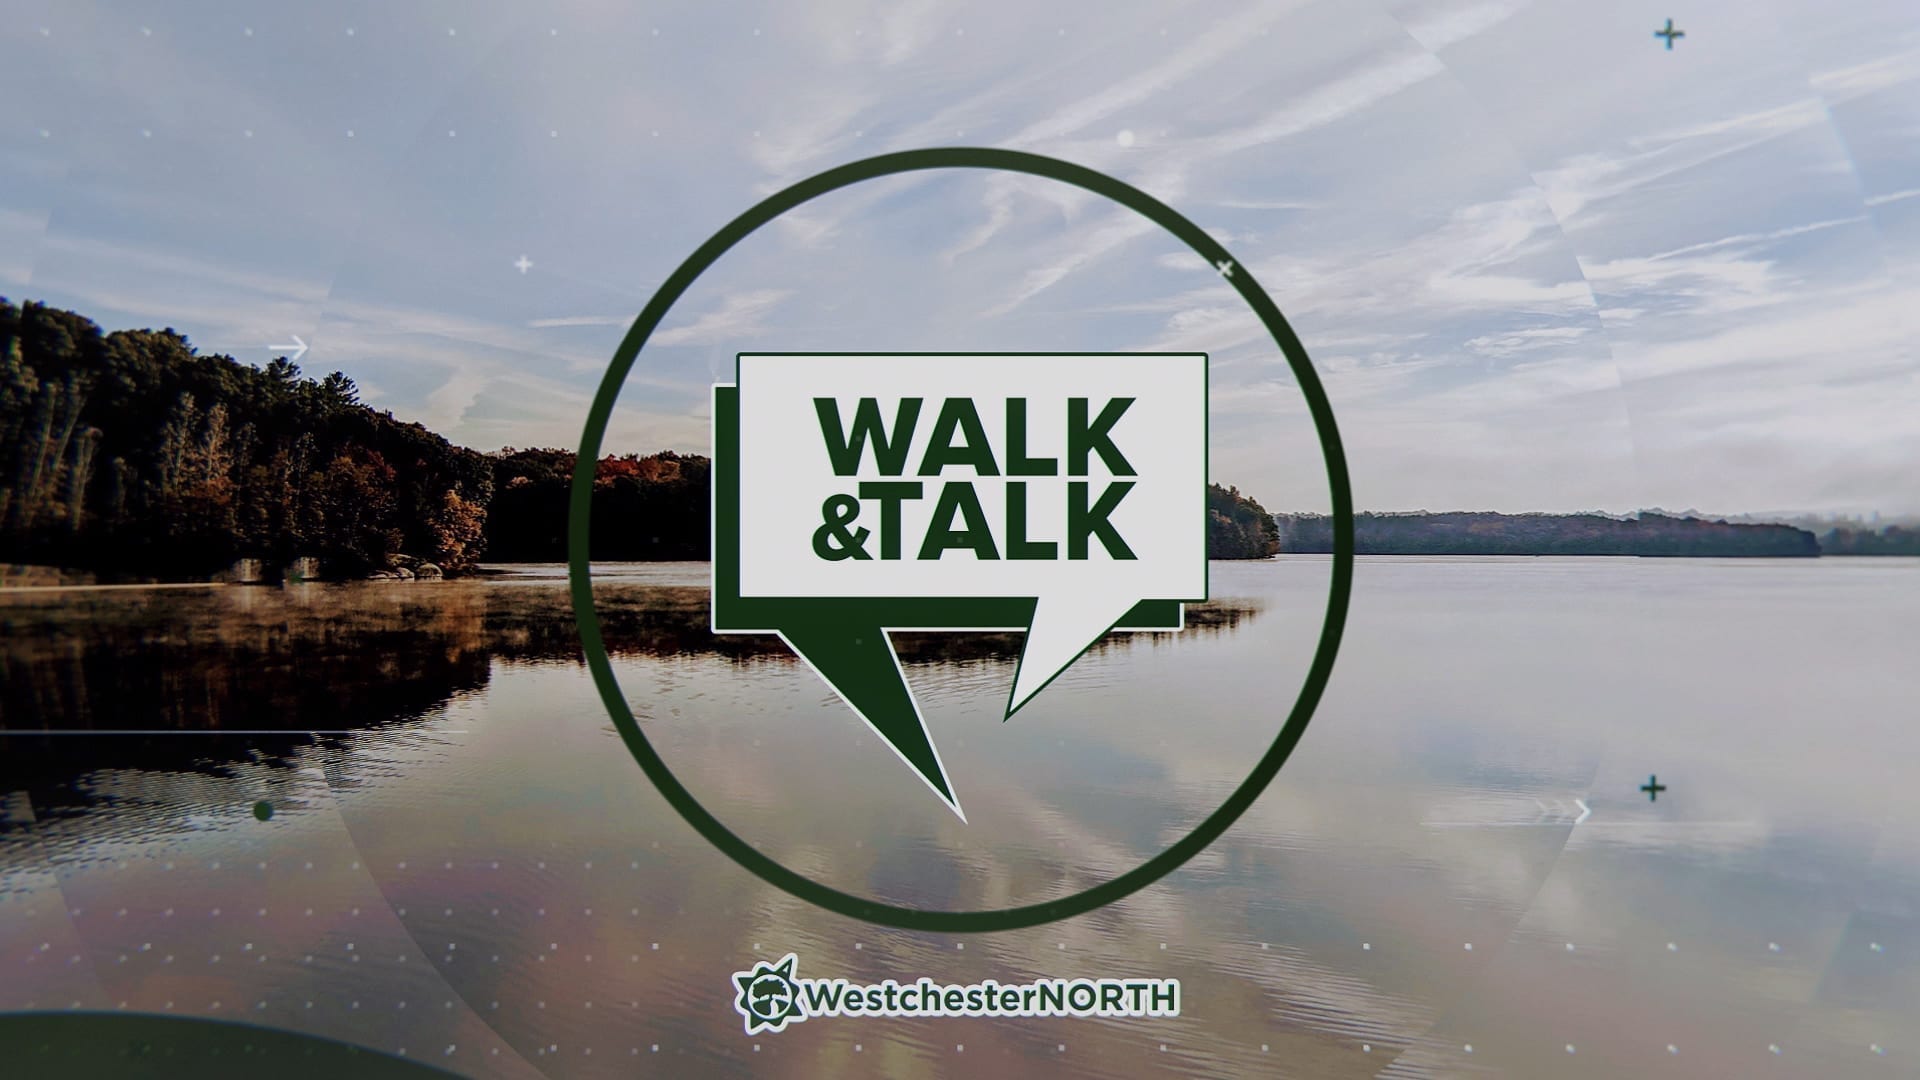 Walk & Talk Video Series on Westchester North